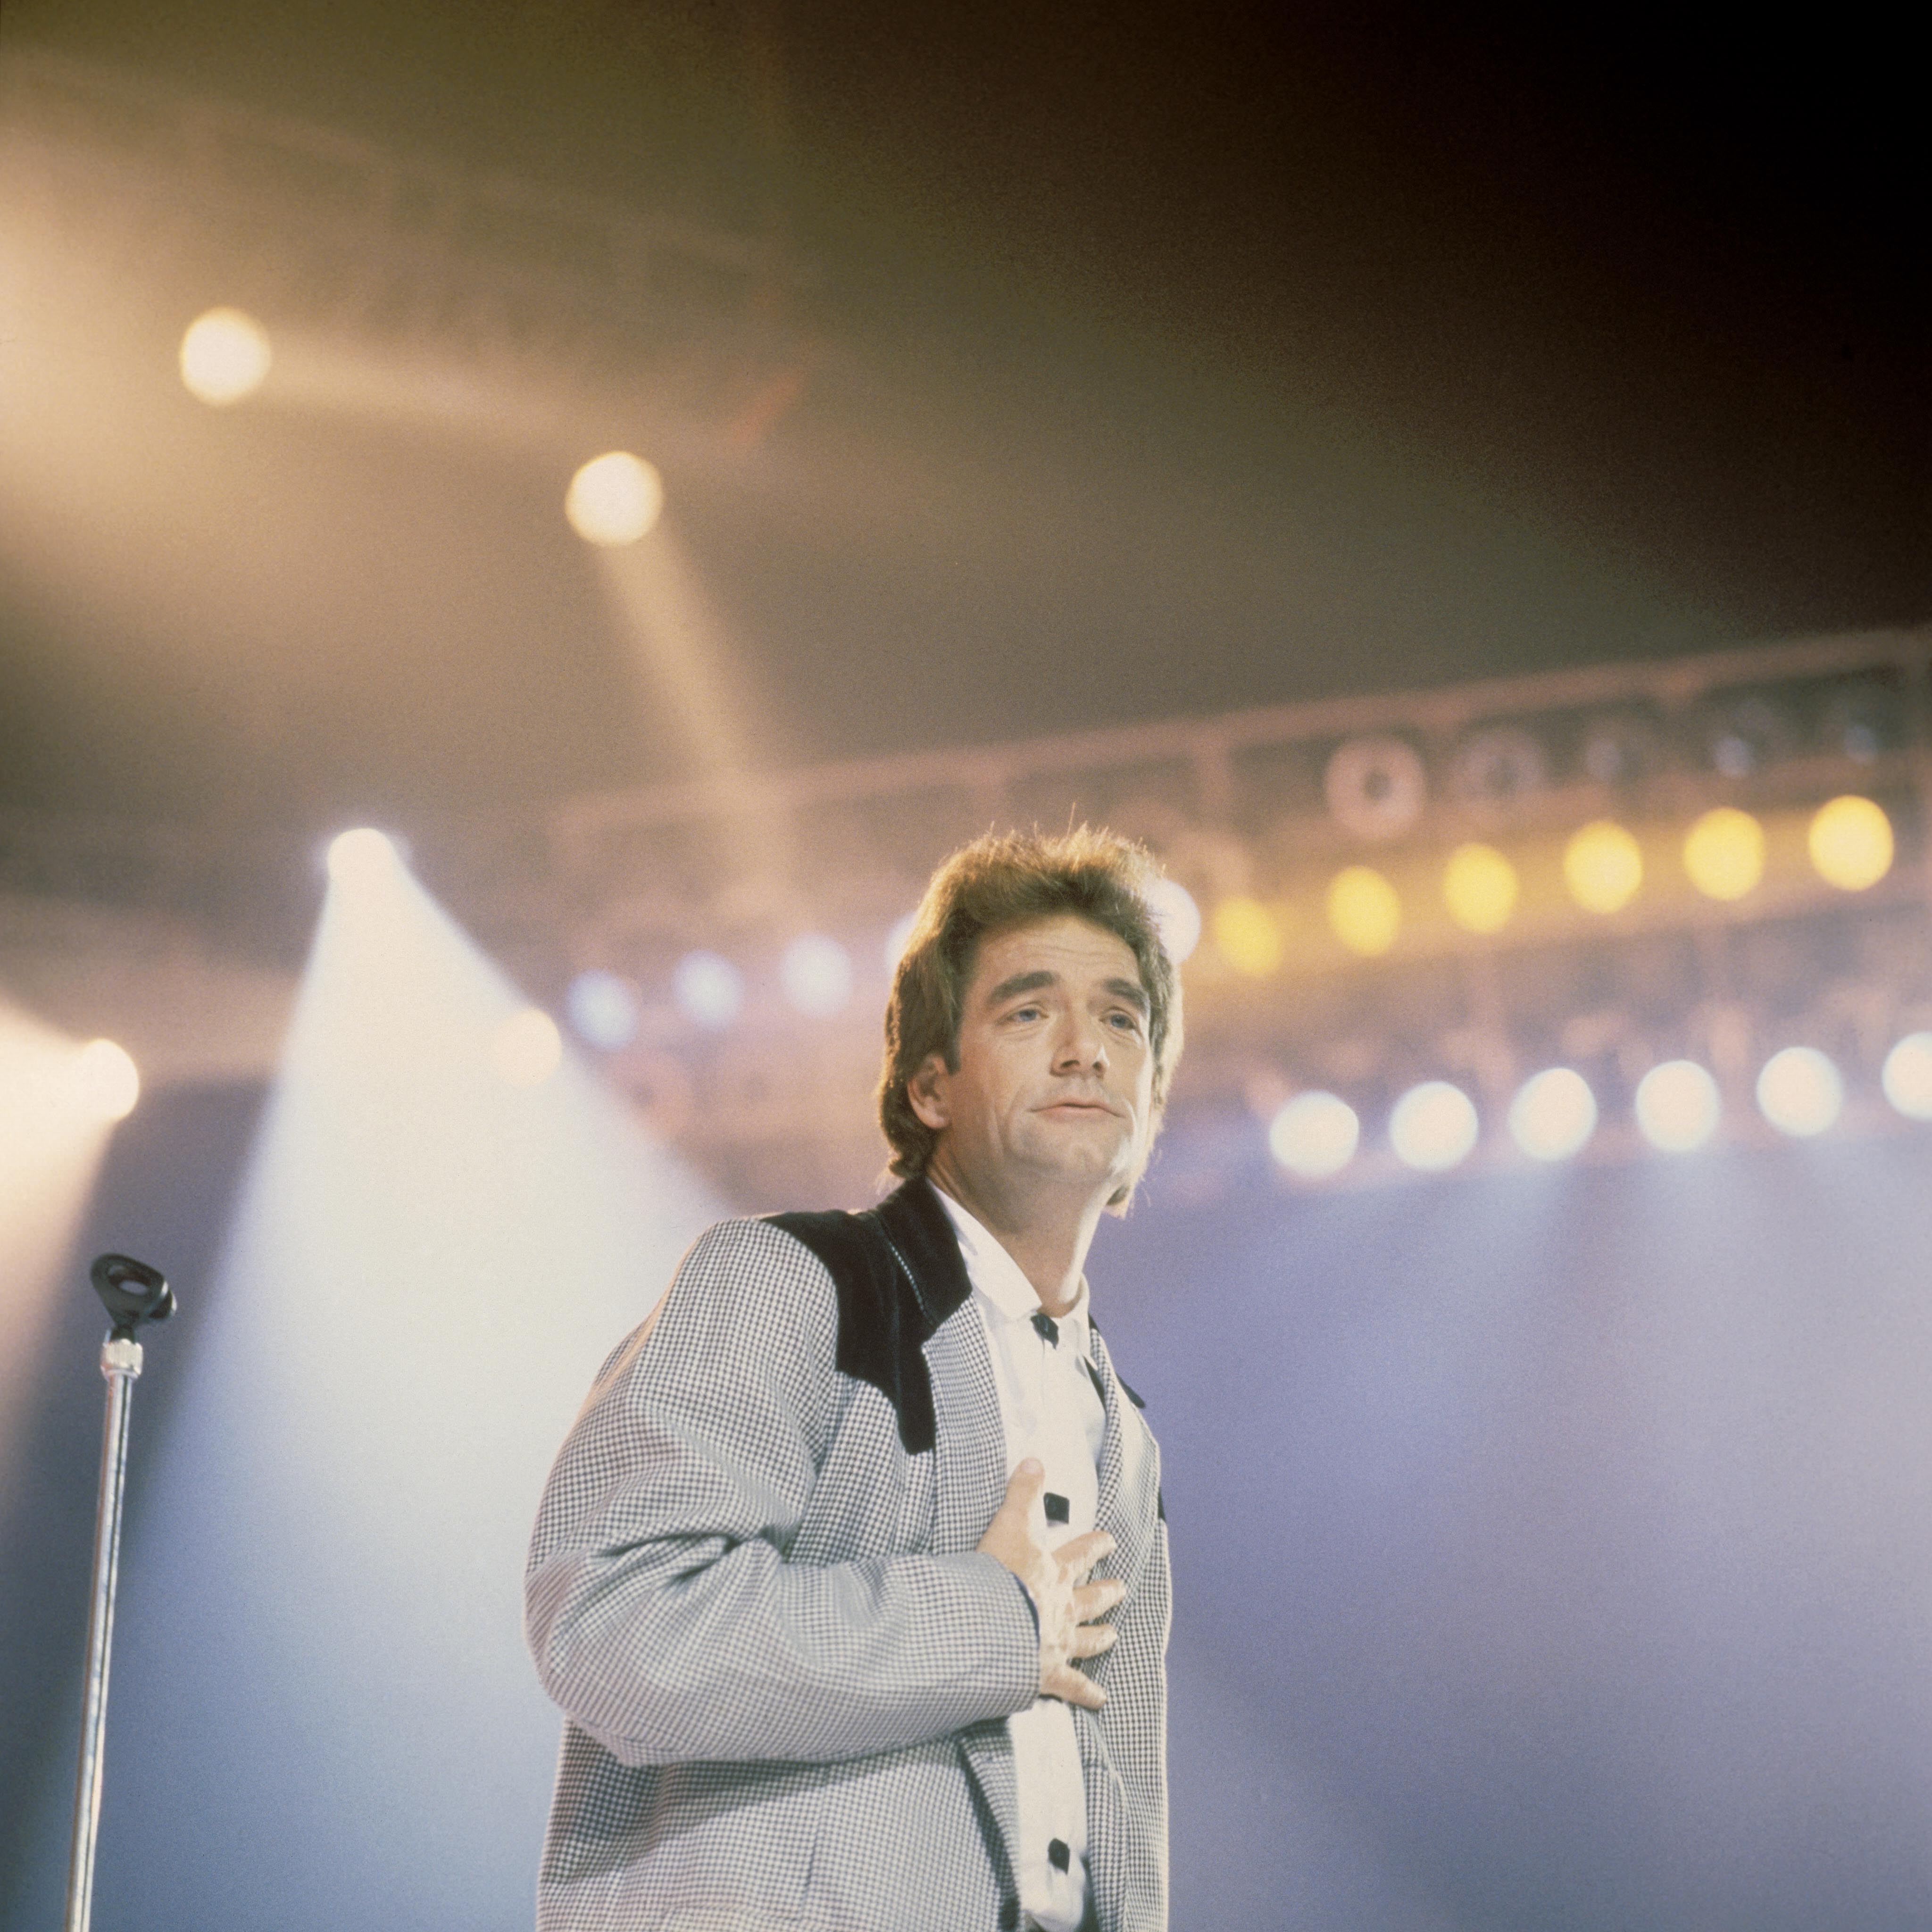 El músico durante una actuación en directo el 1 de enero de 1980. | Fuente: Getty Images